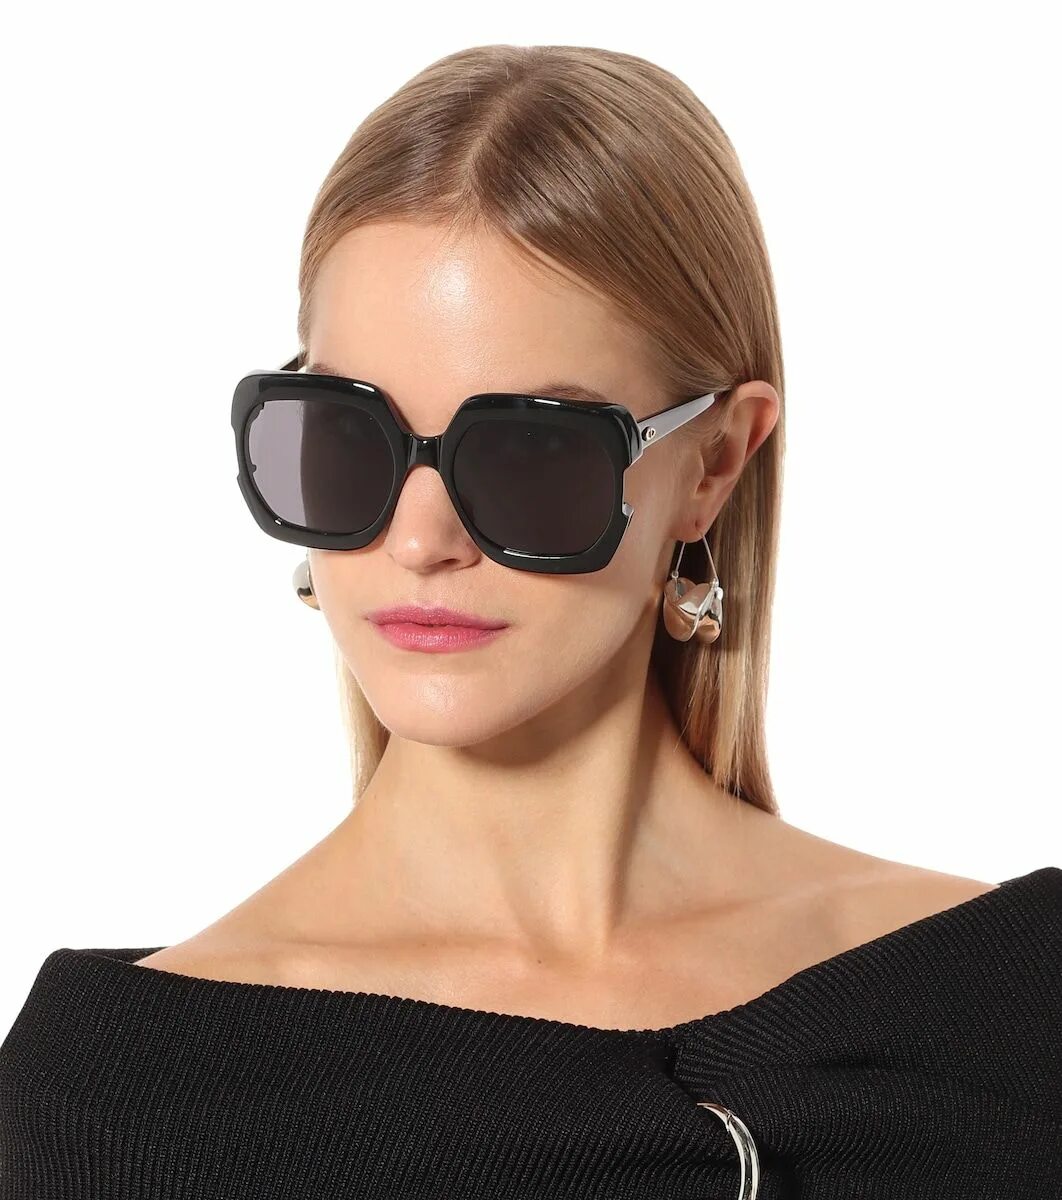 Очки солнцезащитные Кристиан диор. Dior Gaia очки. Очки Кристиан диор женские солнцезащитные. Очки Кристиан диор женские солнцезащитные 2021. Солнцезащитные очки женские брендовые москва